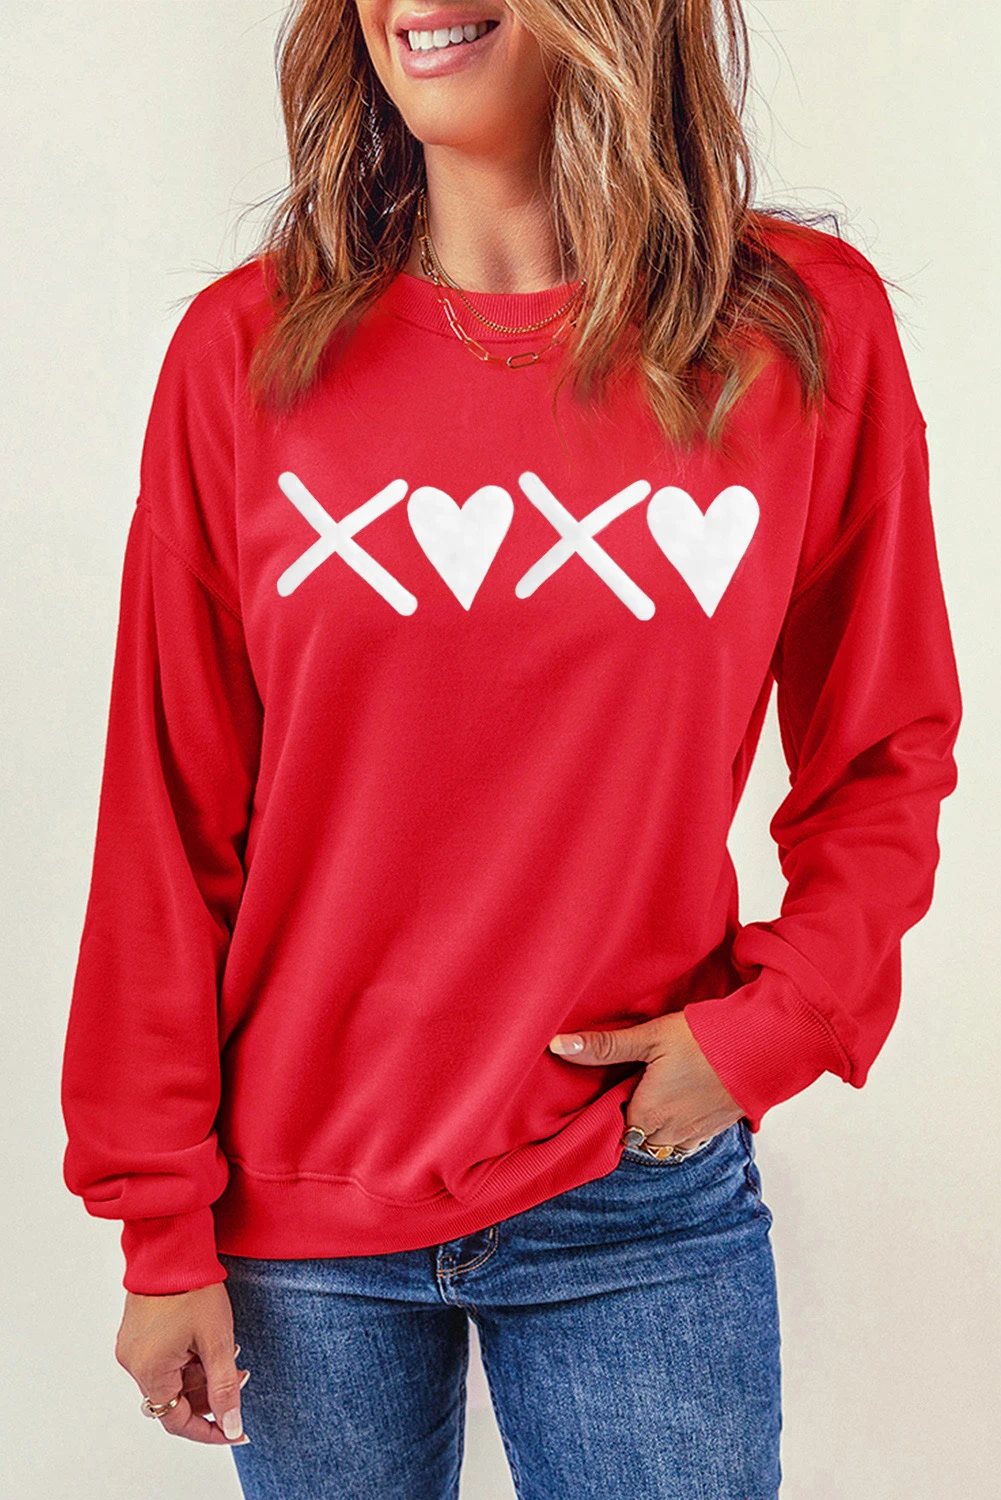 红色 XOXO 印花情人节心形套头衫 LC2538318